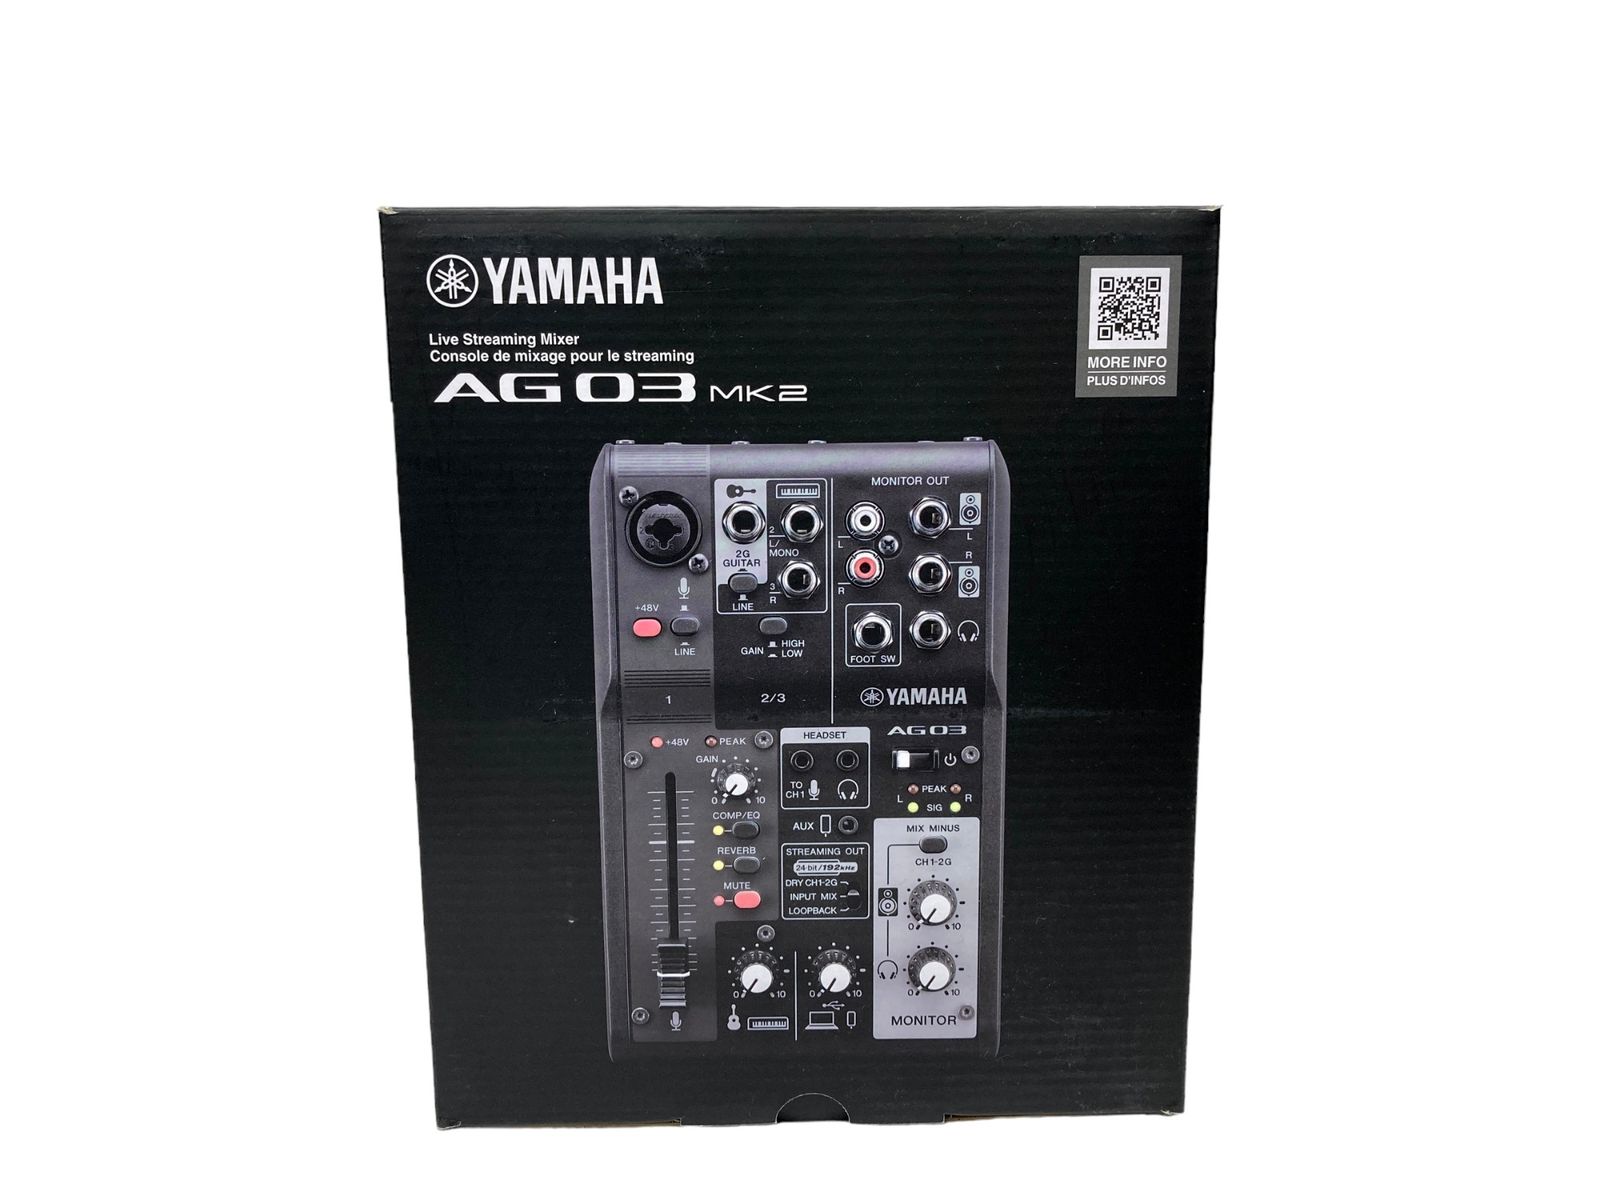 YAMAHA (ヤマハ) 3ch ウェブキャスティングミキサー ライブストリーミング AG03 MK2 ブラック 楽器 機材/028 - メルカリ